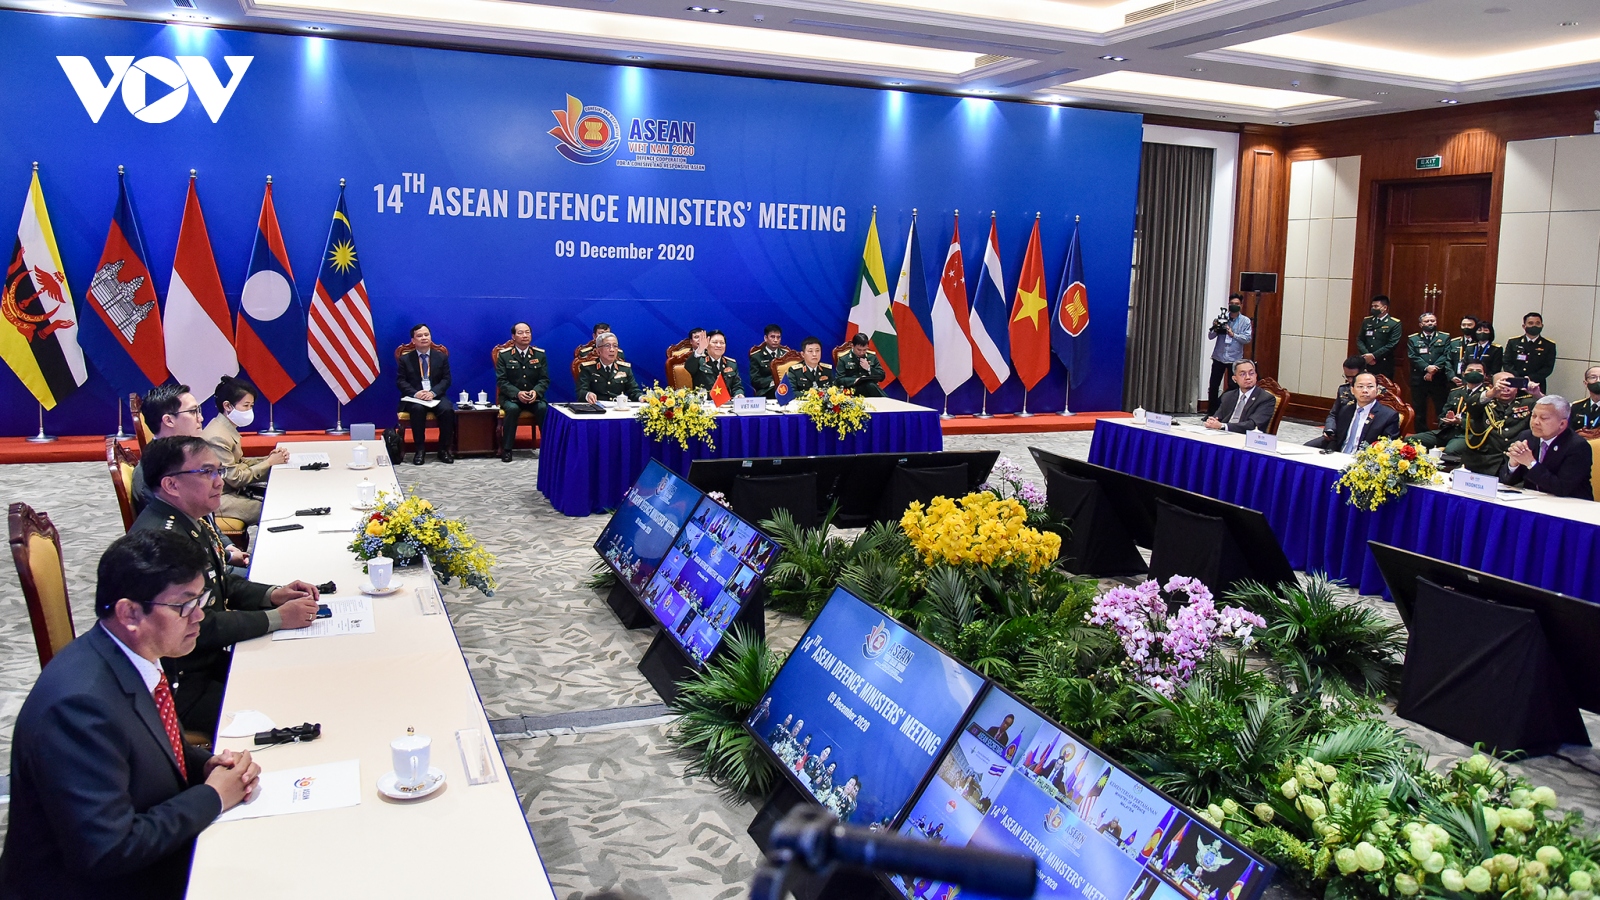 Hội nghị Bộ trưởng Quốc phòng ASEAN mở rộng họp trực tuyến từ Hà Nội